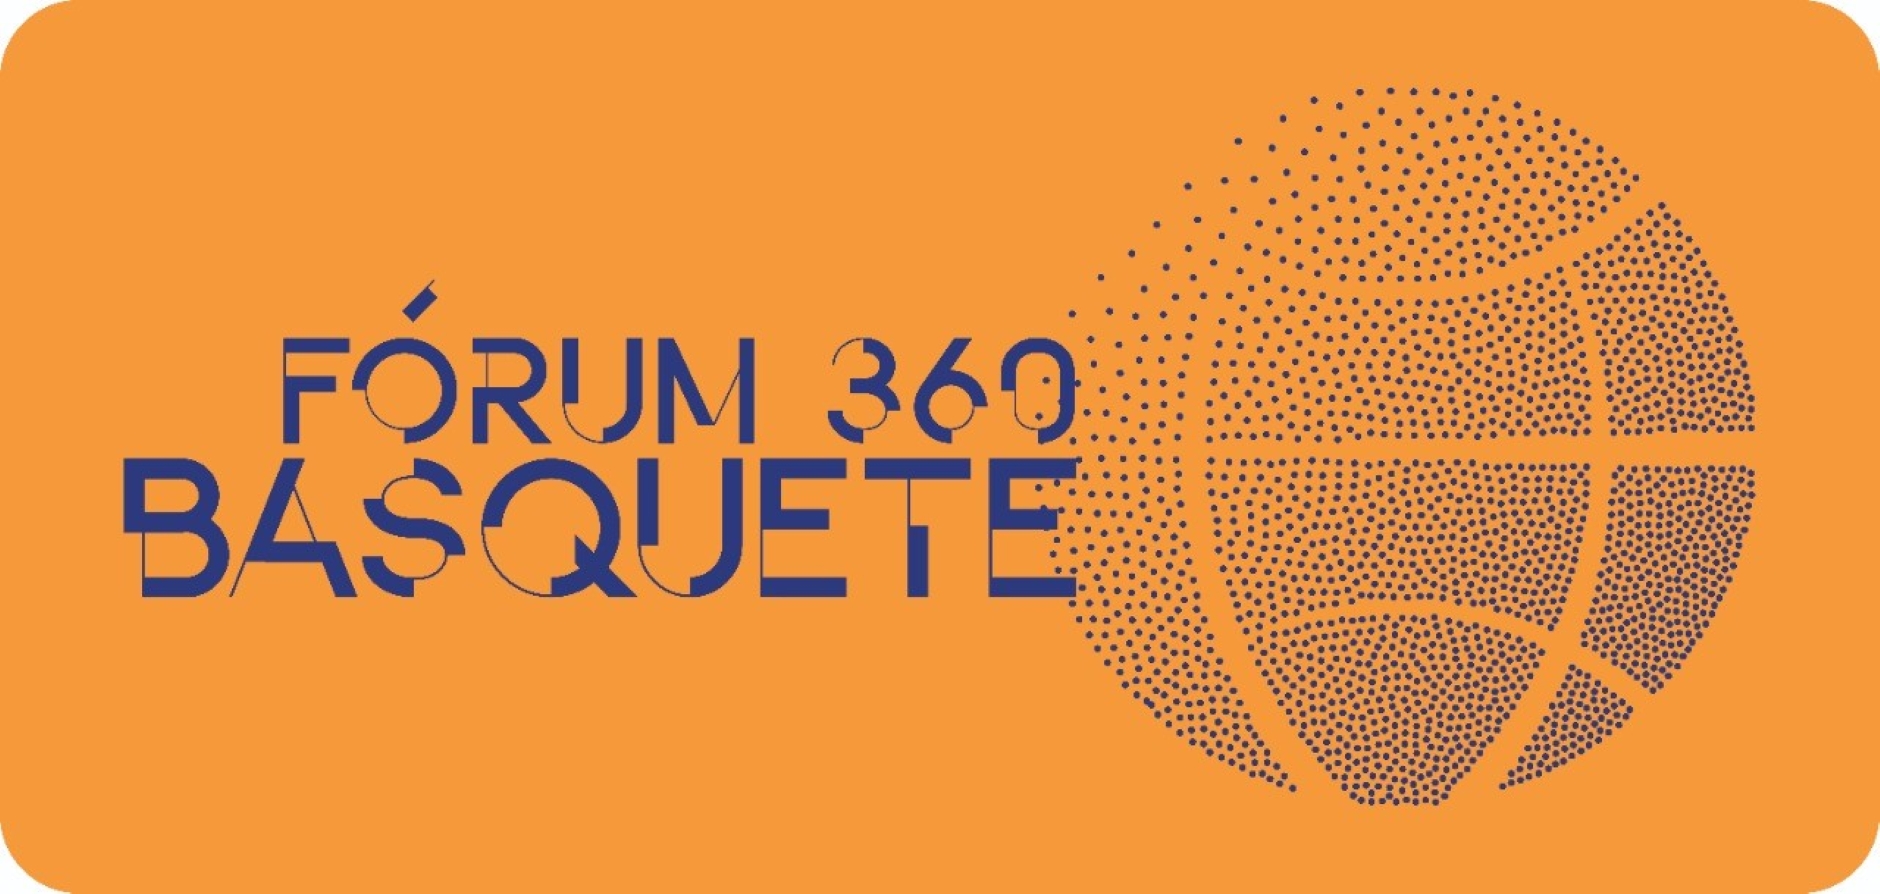 'Fórum 360 Basquete' vai reunir profissionais do mercado em amplo debate sobre a modalidade